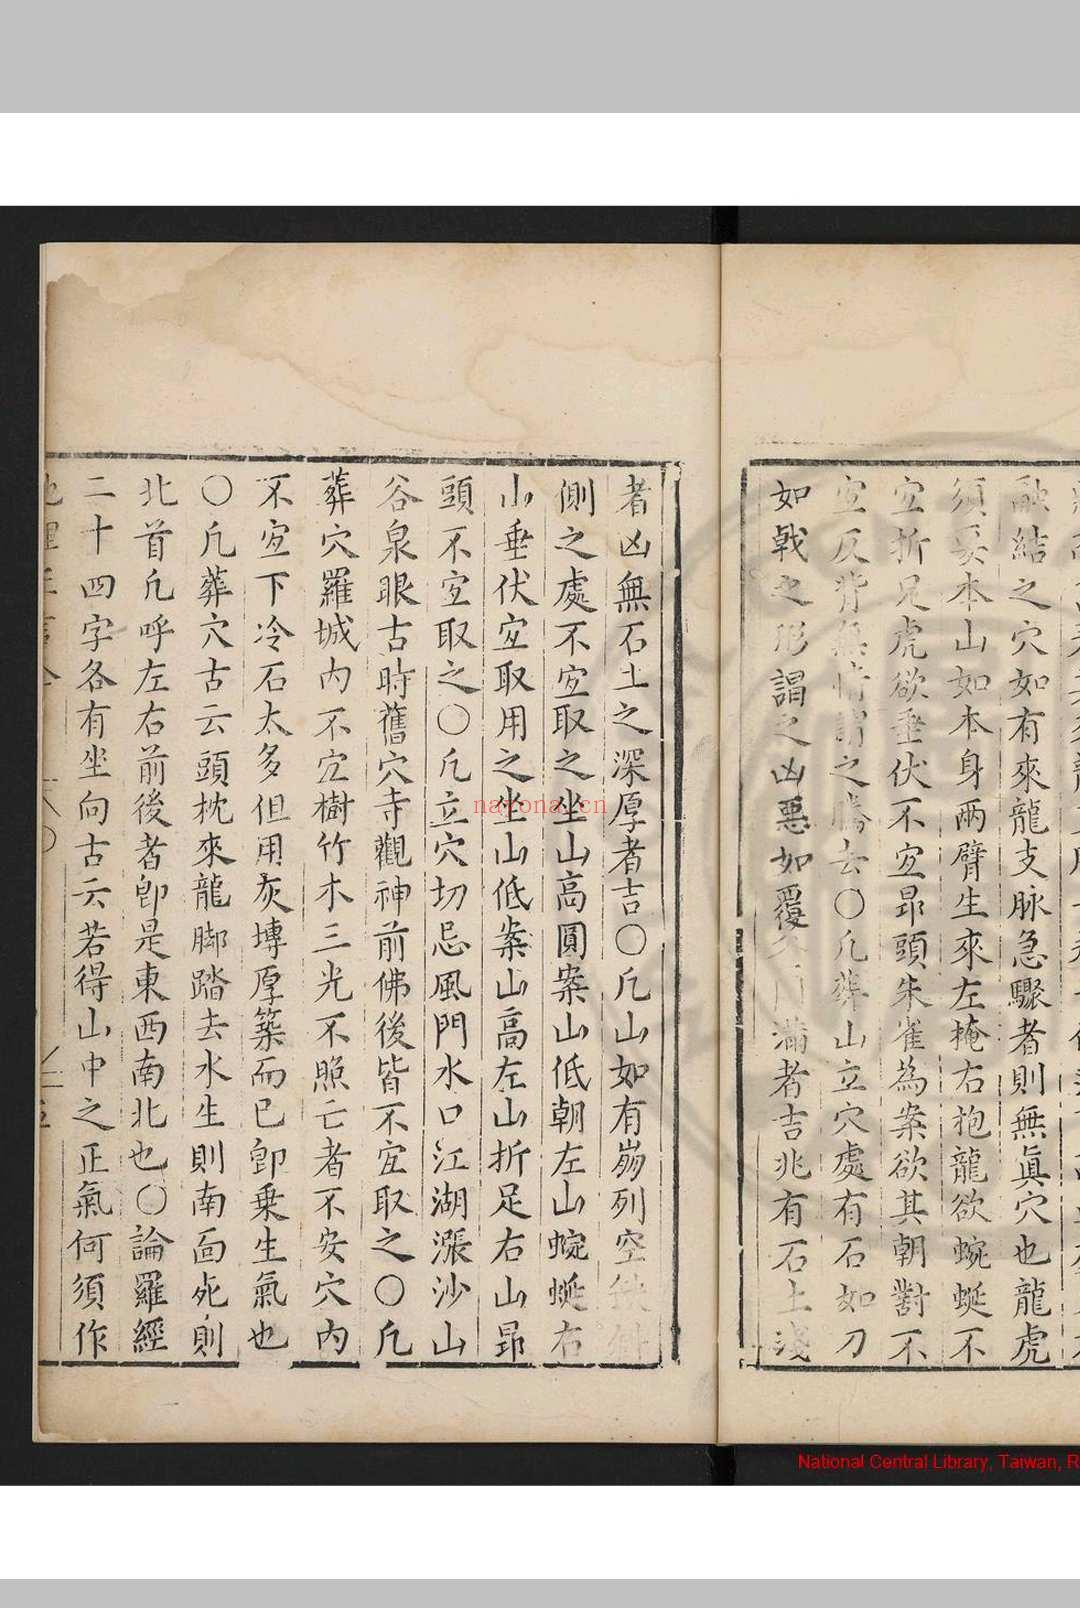 地理正言 (明)朱权撰 明万历间(1573-1620)钱塘胡文焕刊本